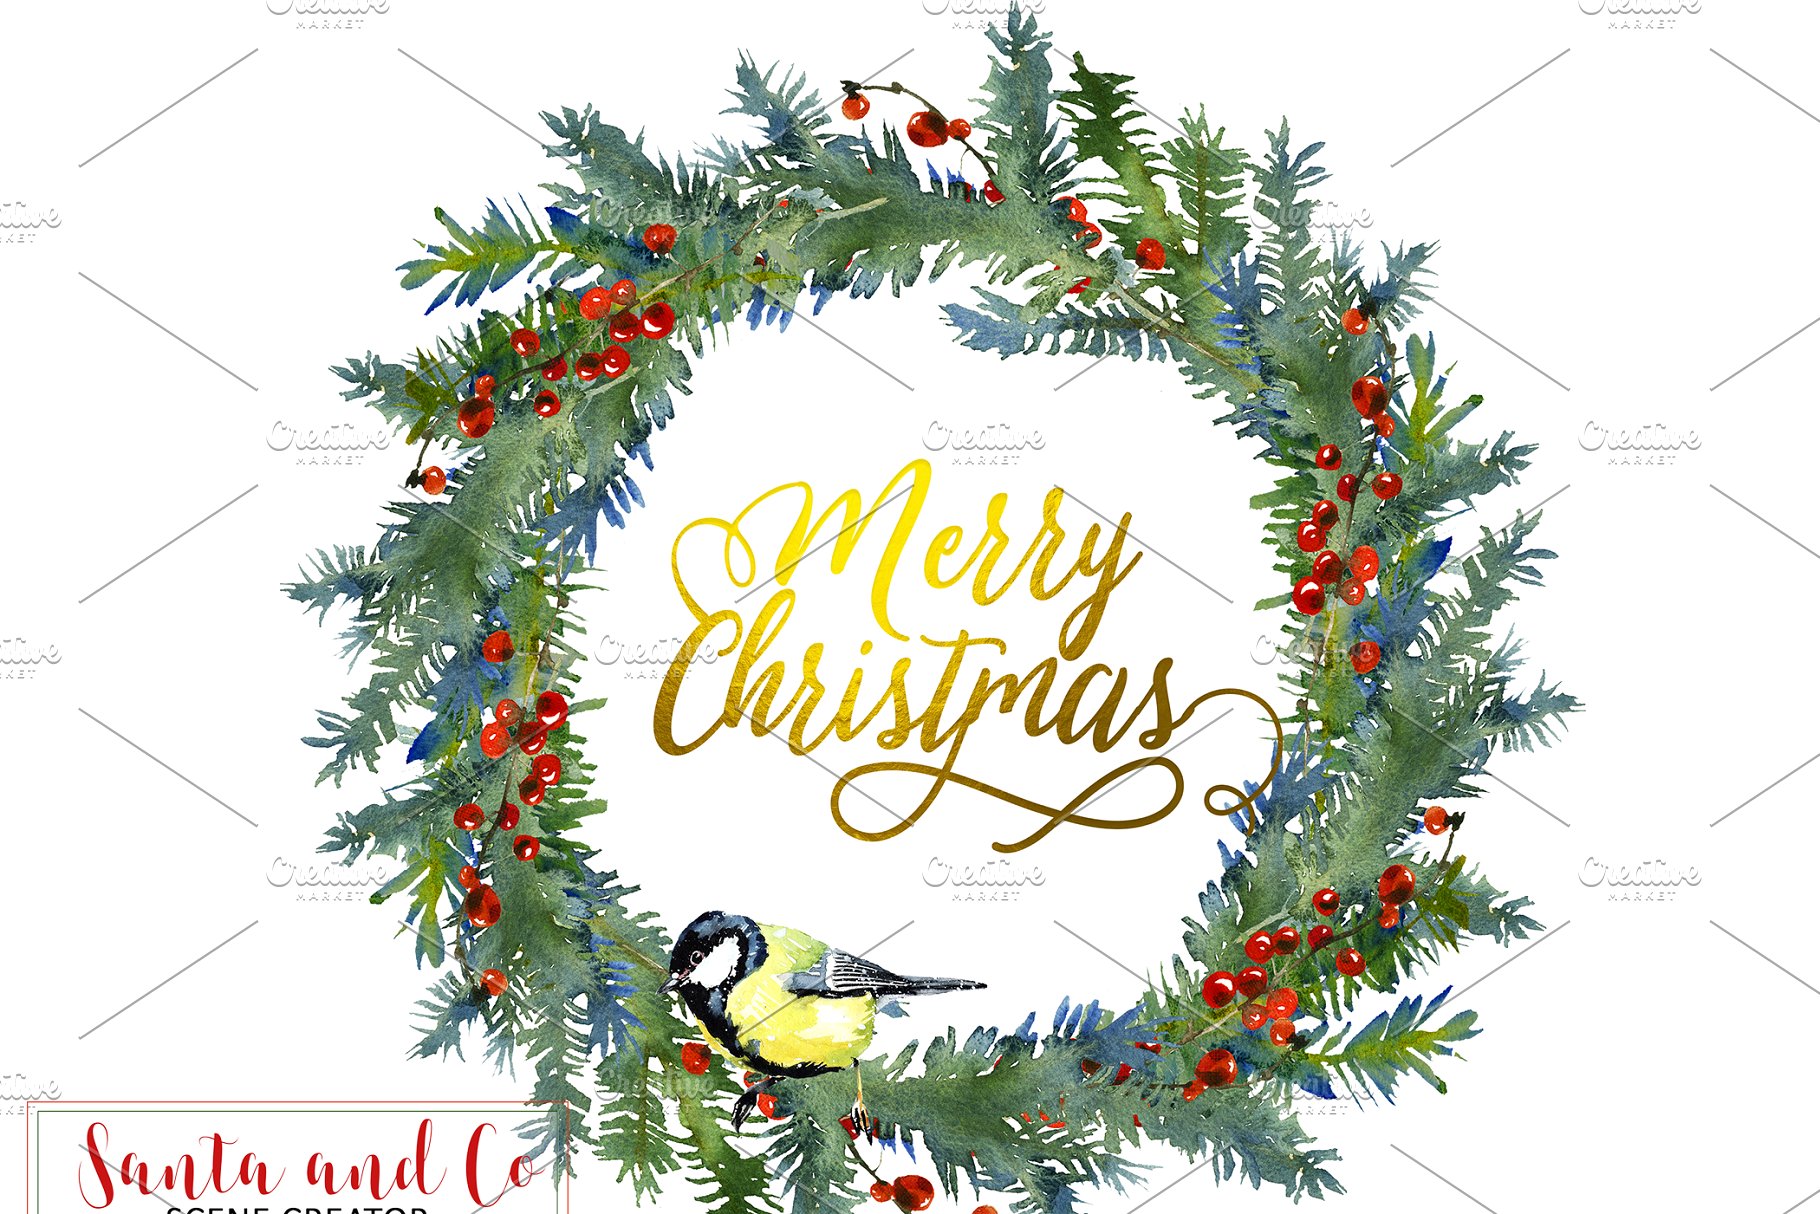 手绘圣诞节主题水彩设计素材包 Santa & Co Christmas Clipart Set插图3